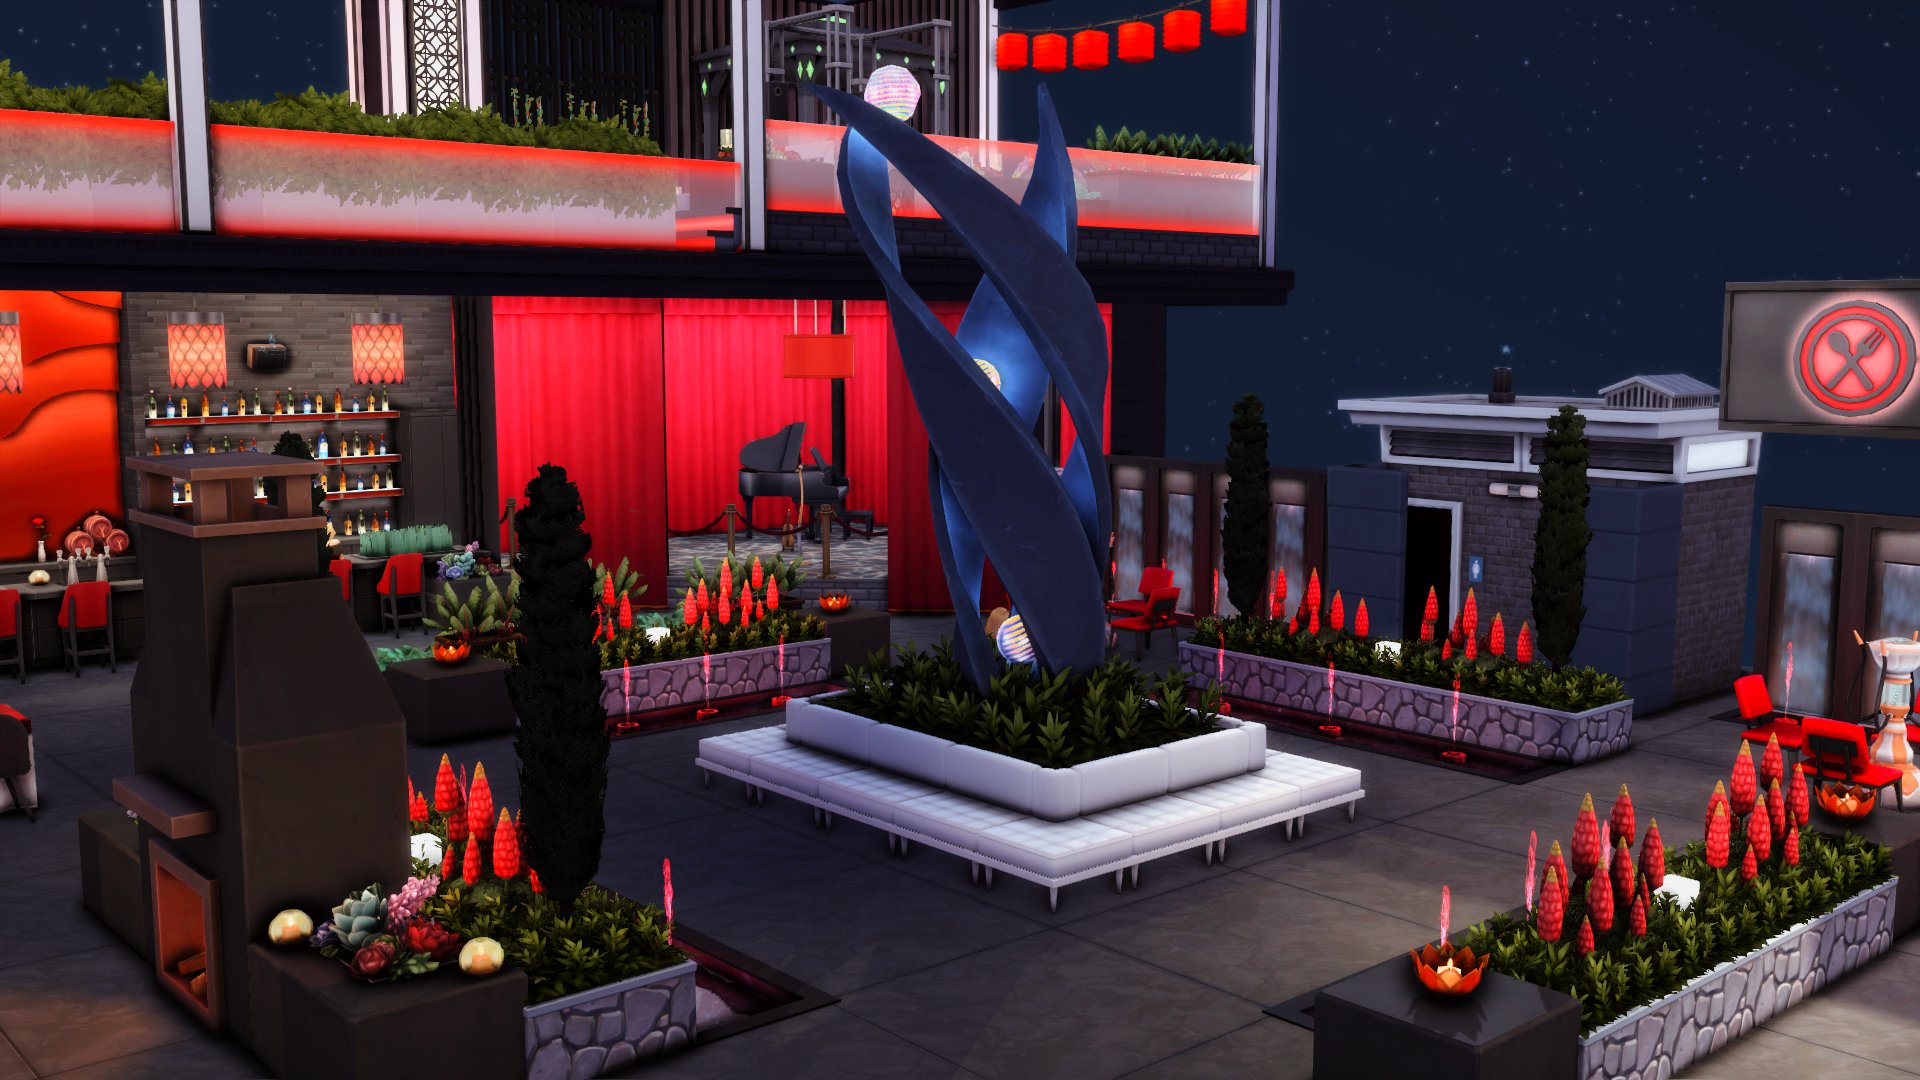 The Sims 4 Stargazer Restaurant